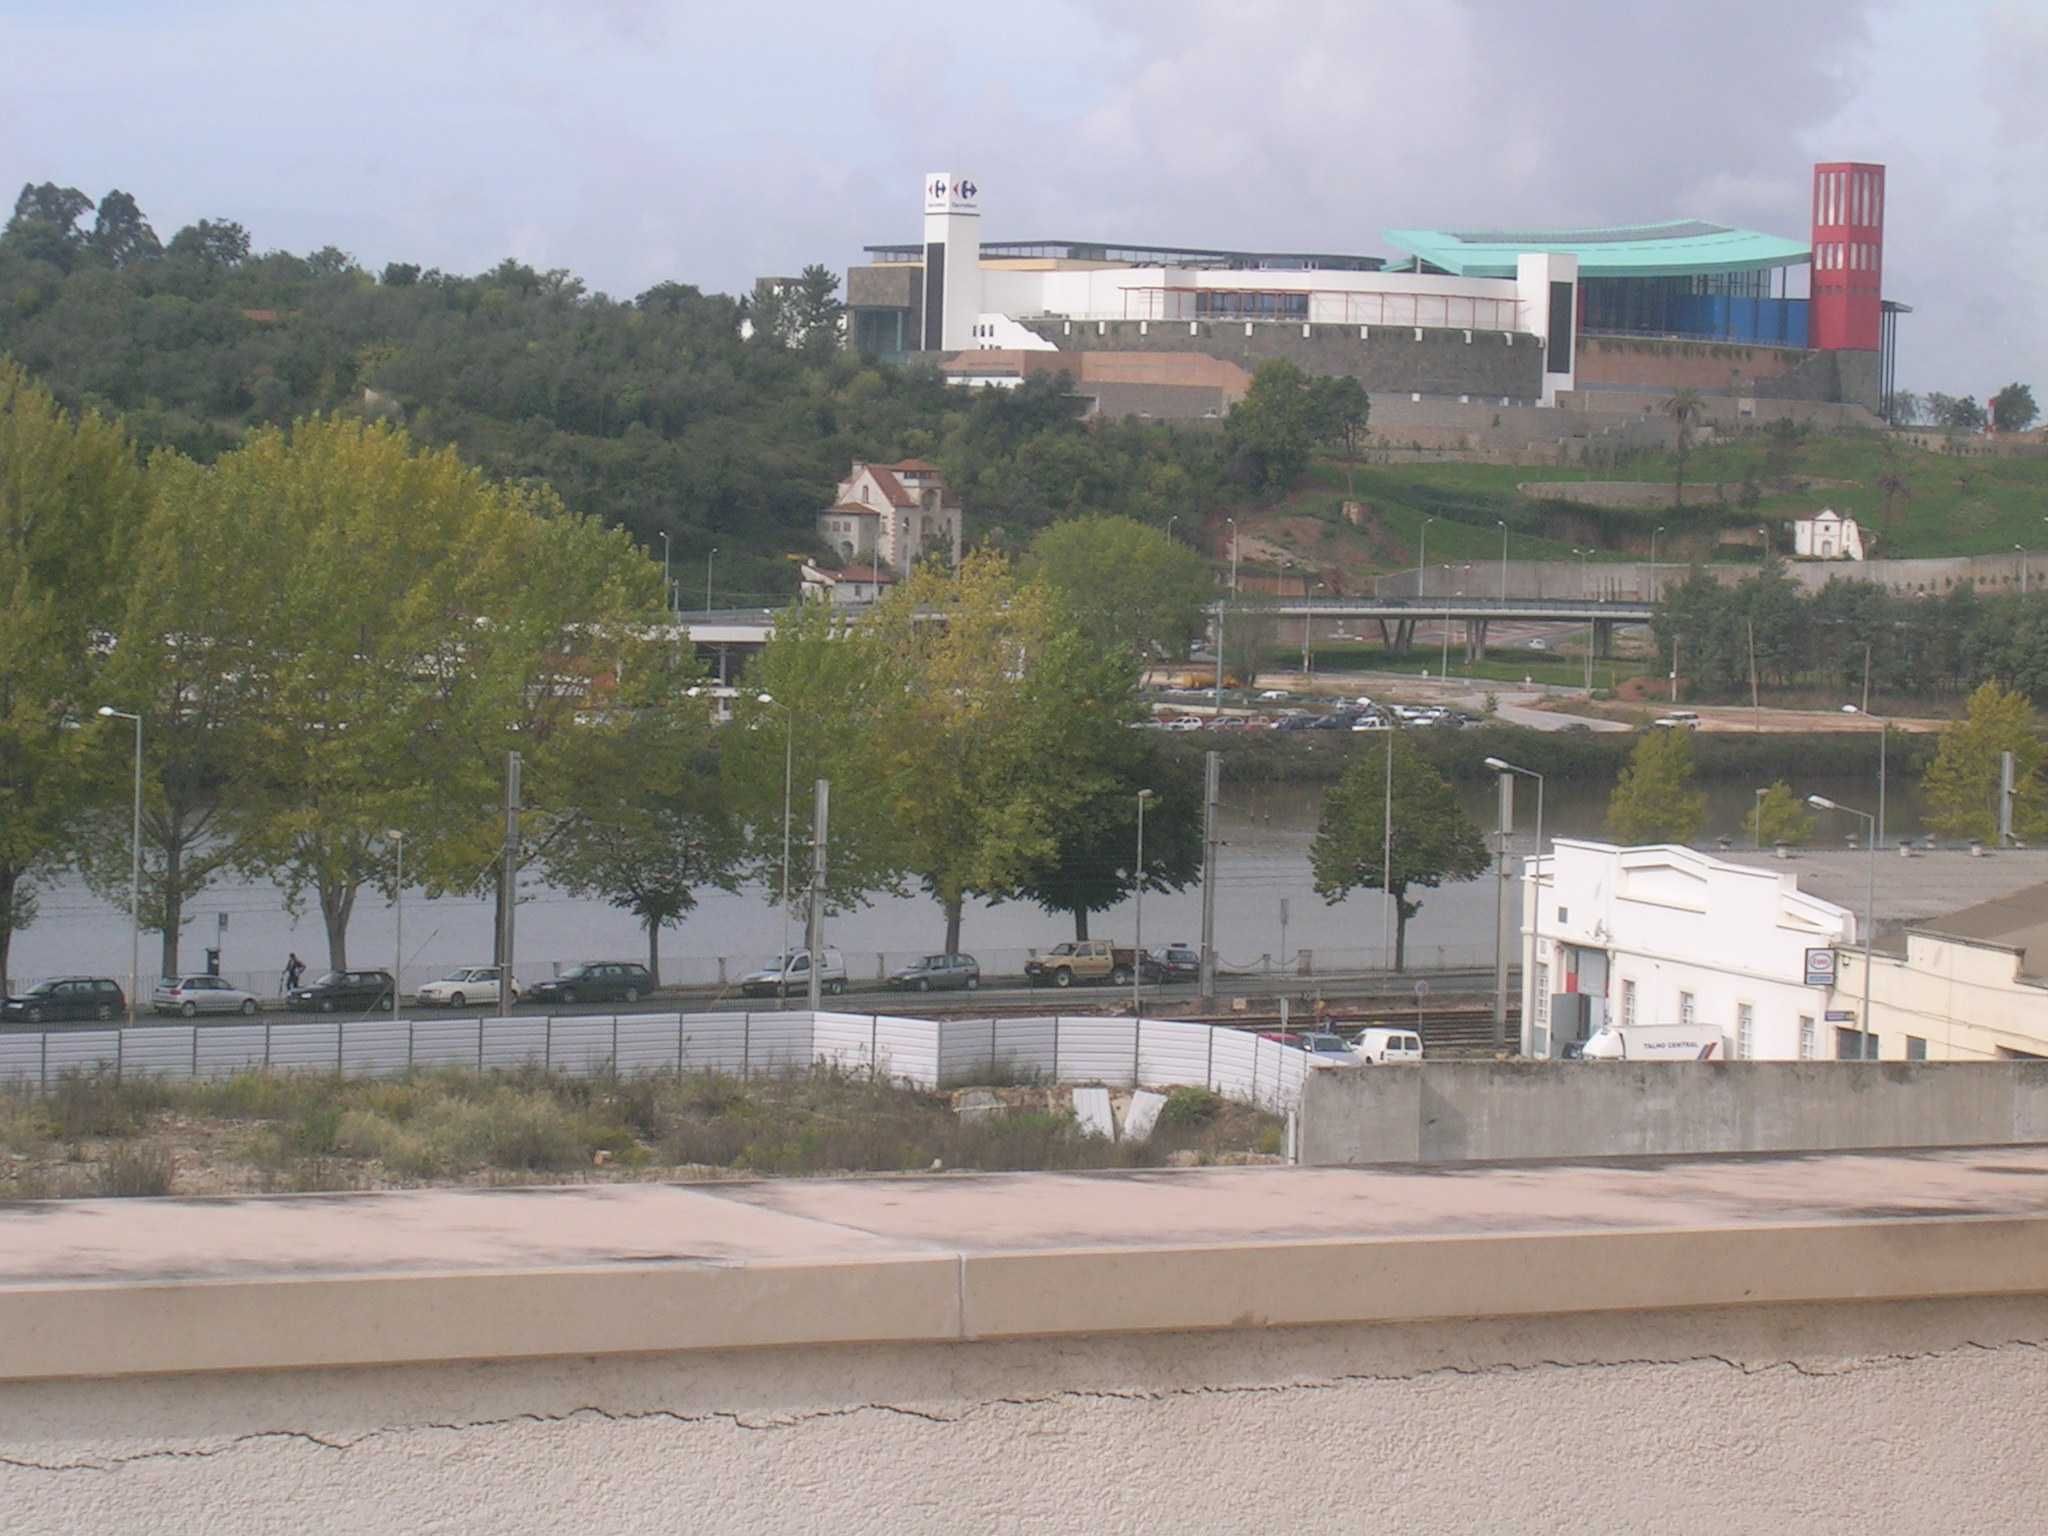 Arrenda-se apartamento T2 com terraço privativo na Baixa de Coimbra